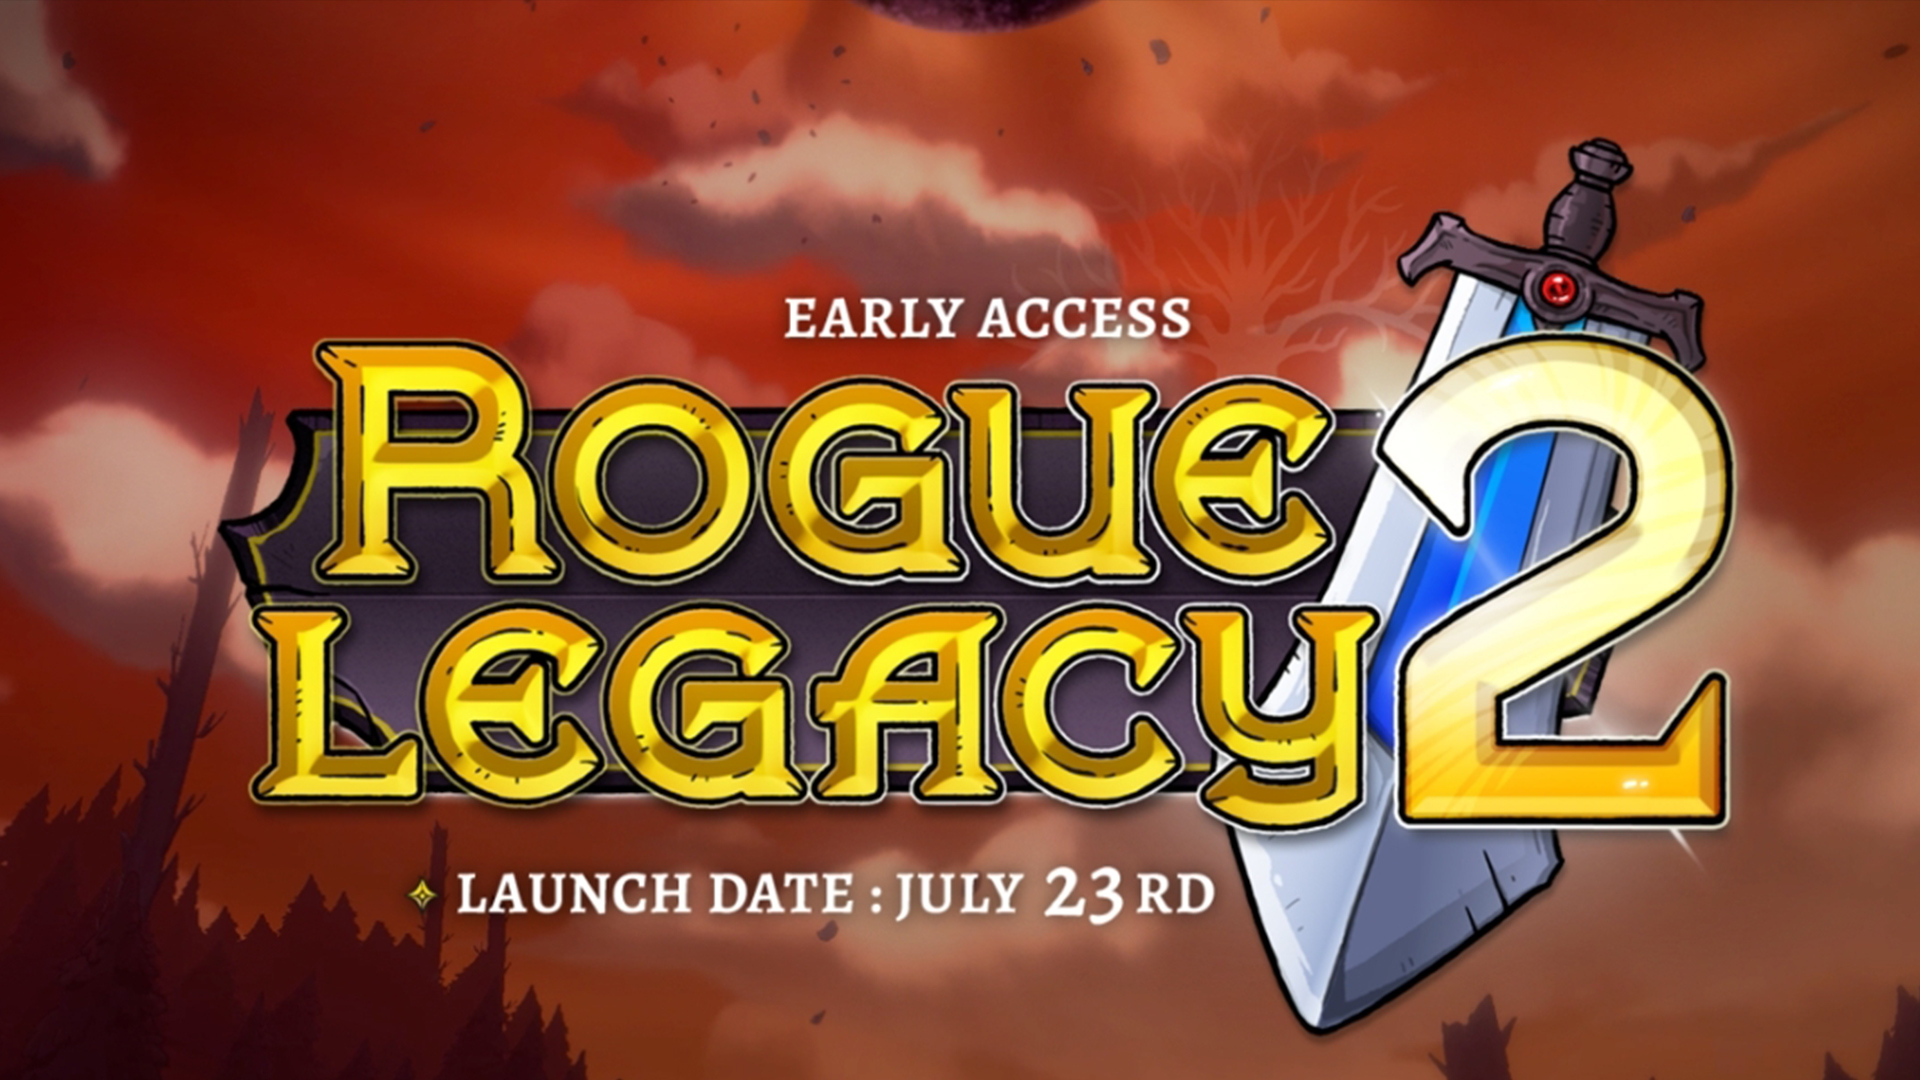 騎士遺產-2-Rogue-Legacy-2-攻略匯集